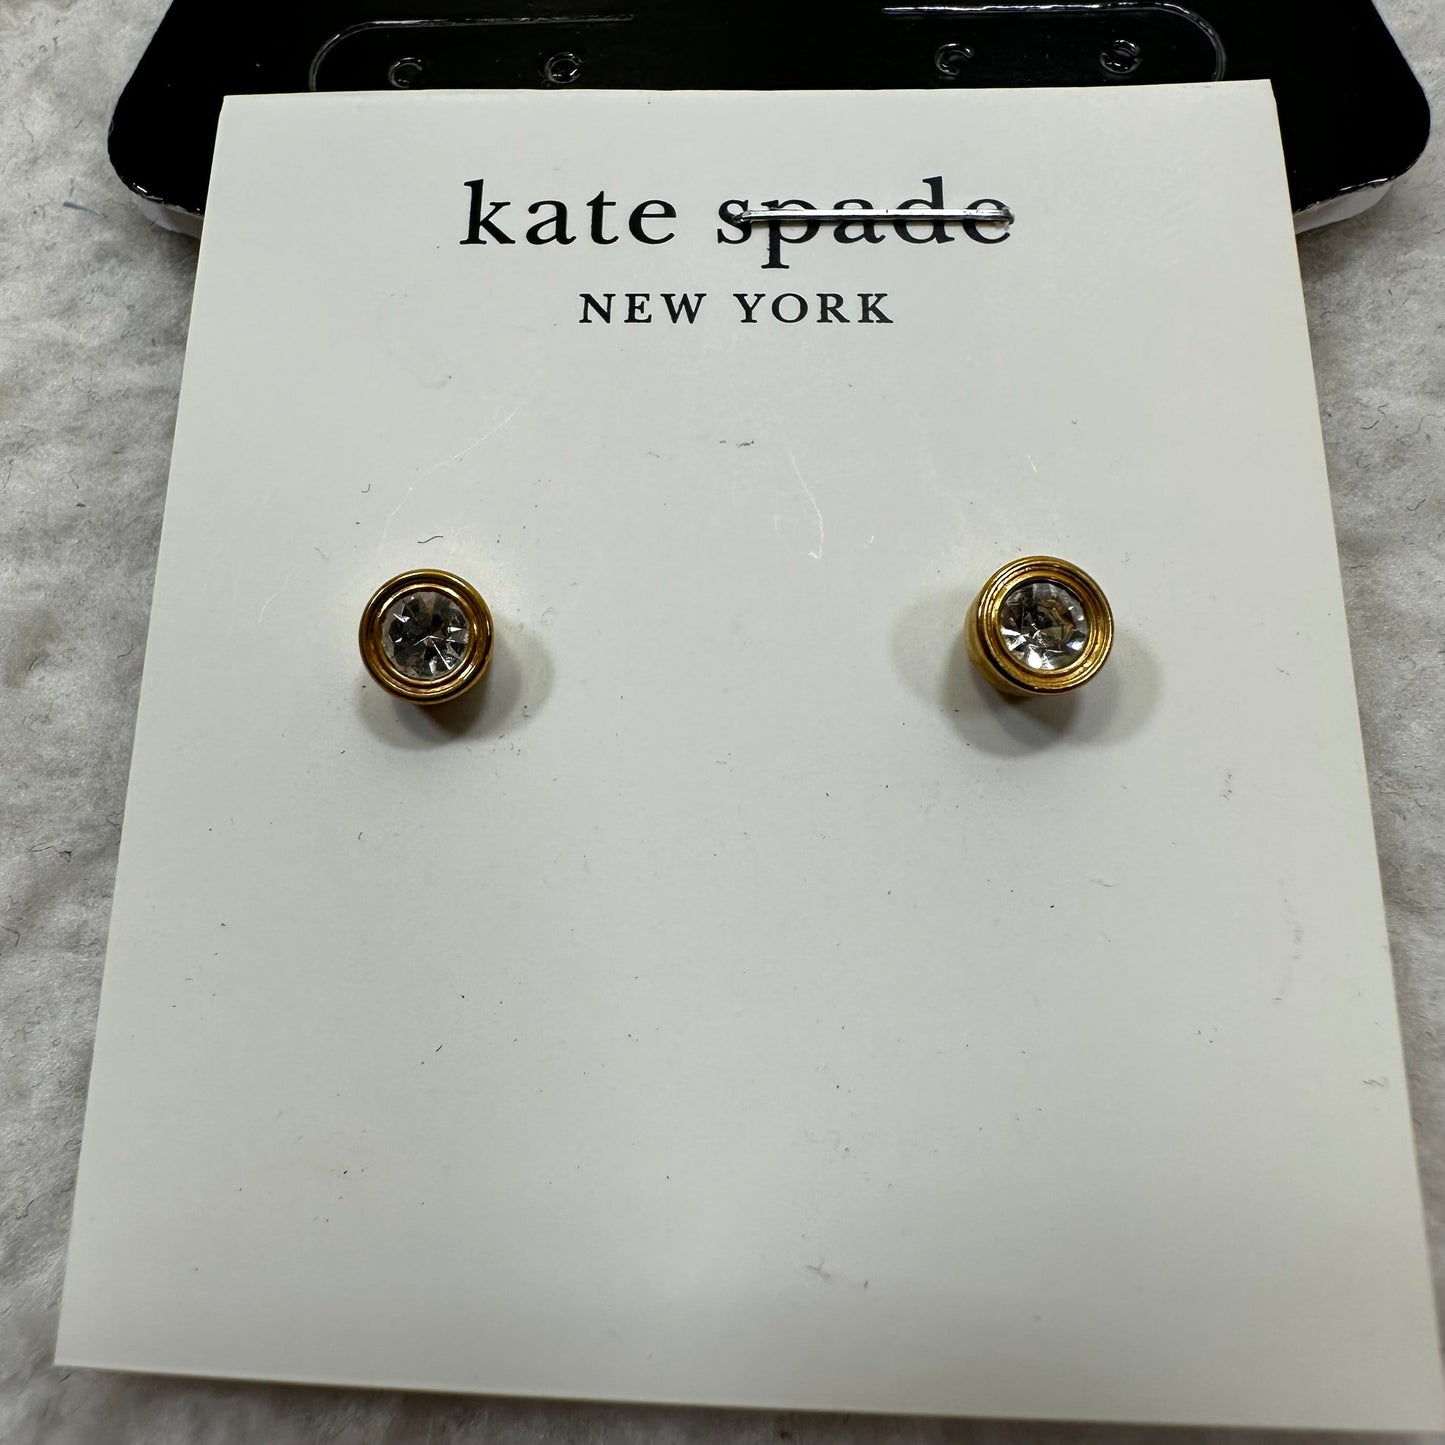 Earrings Stud Kate Spade